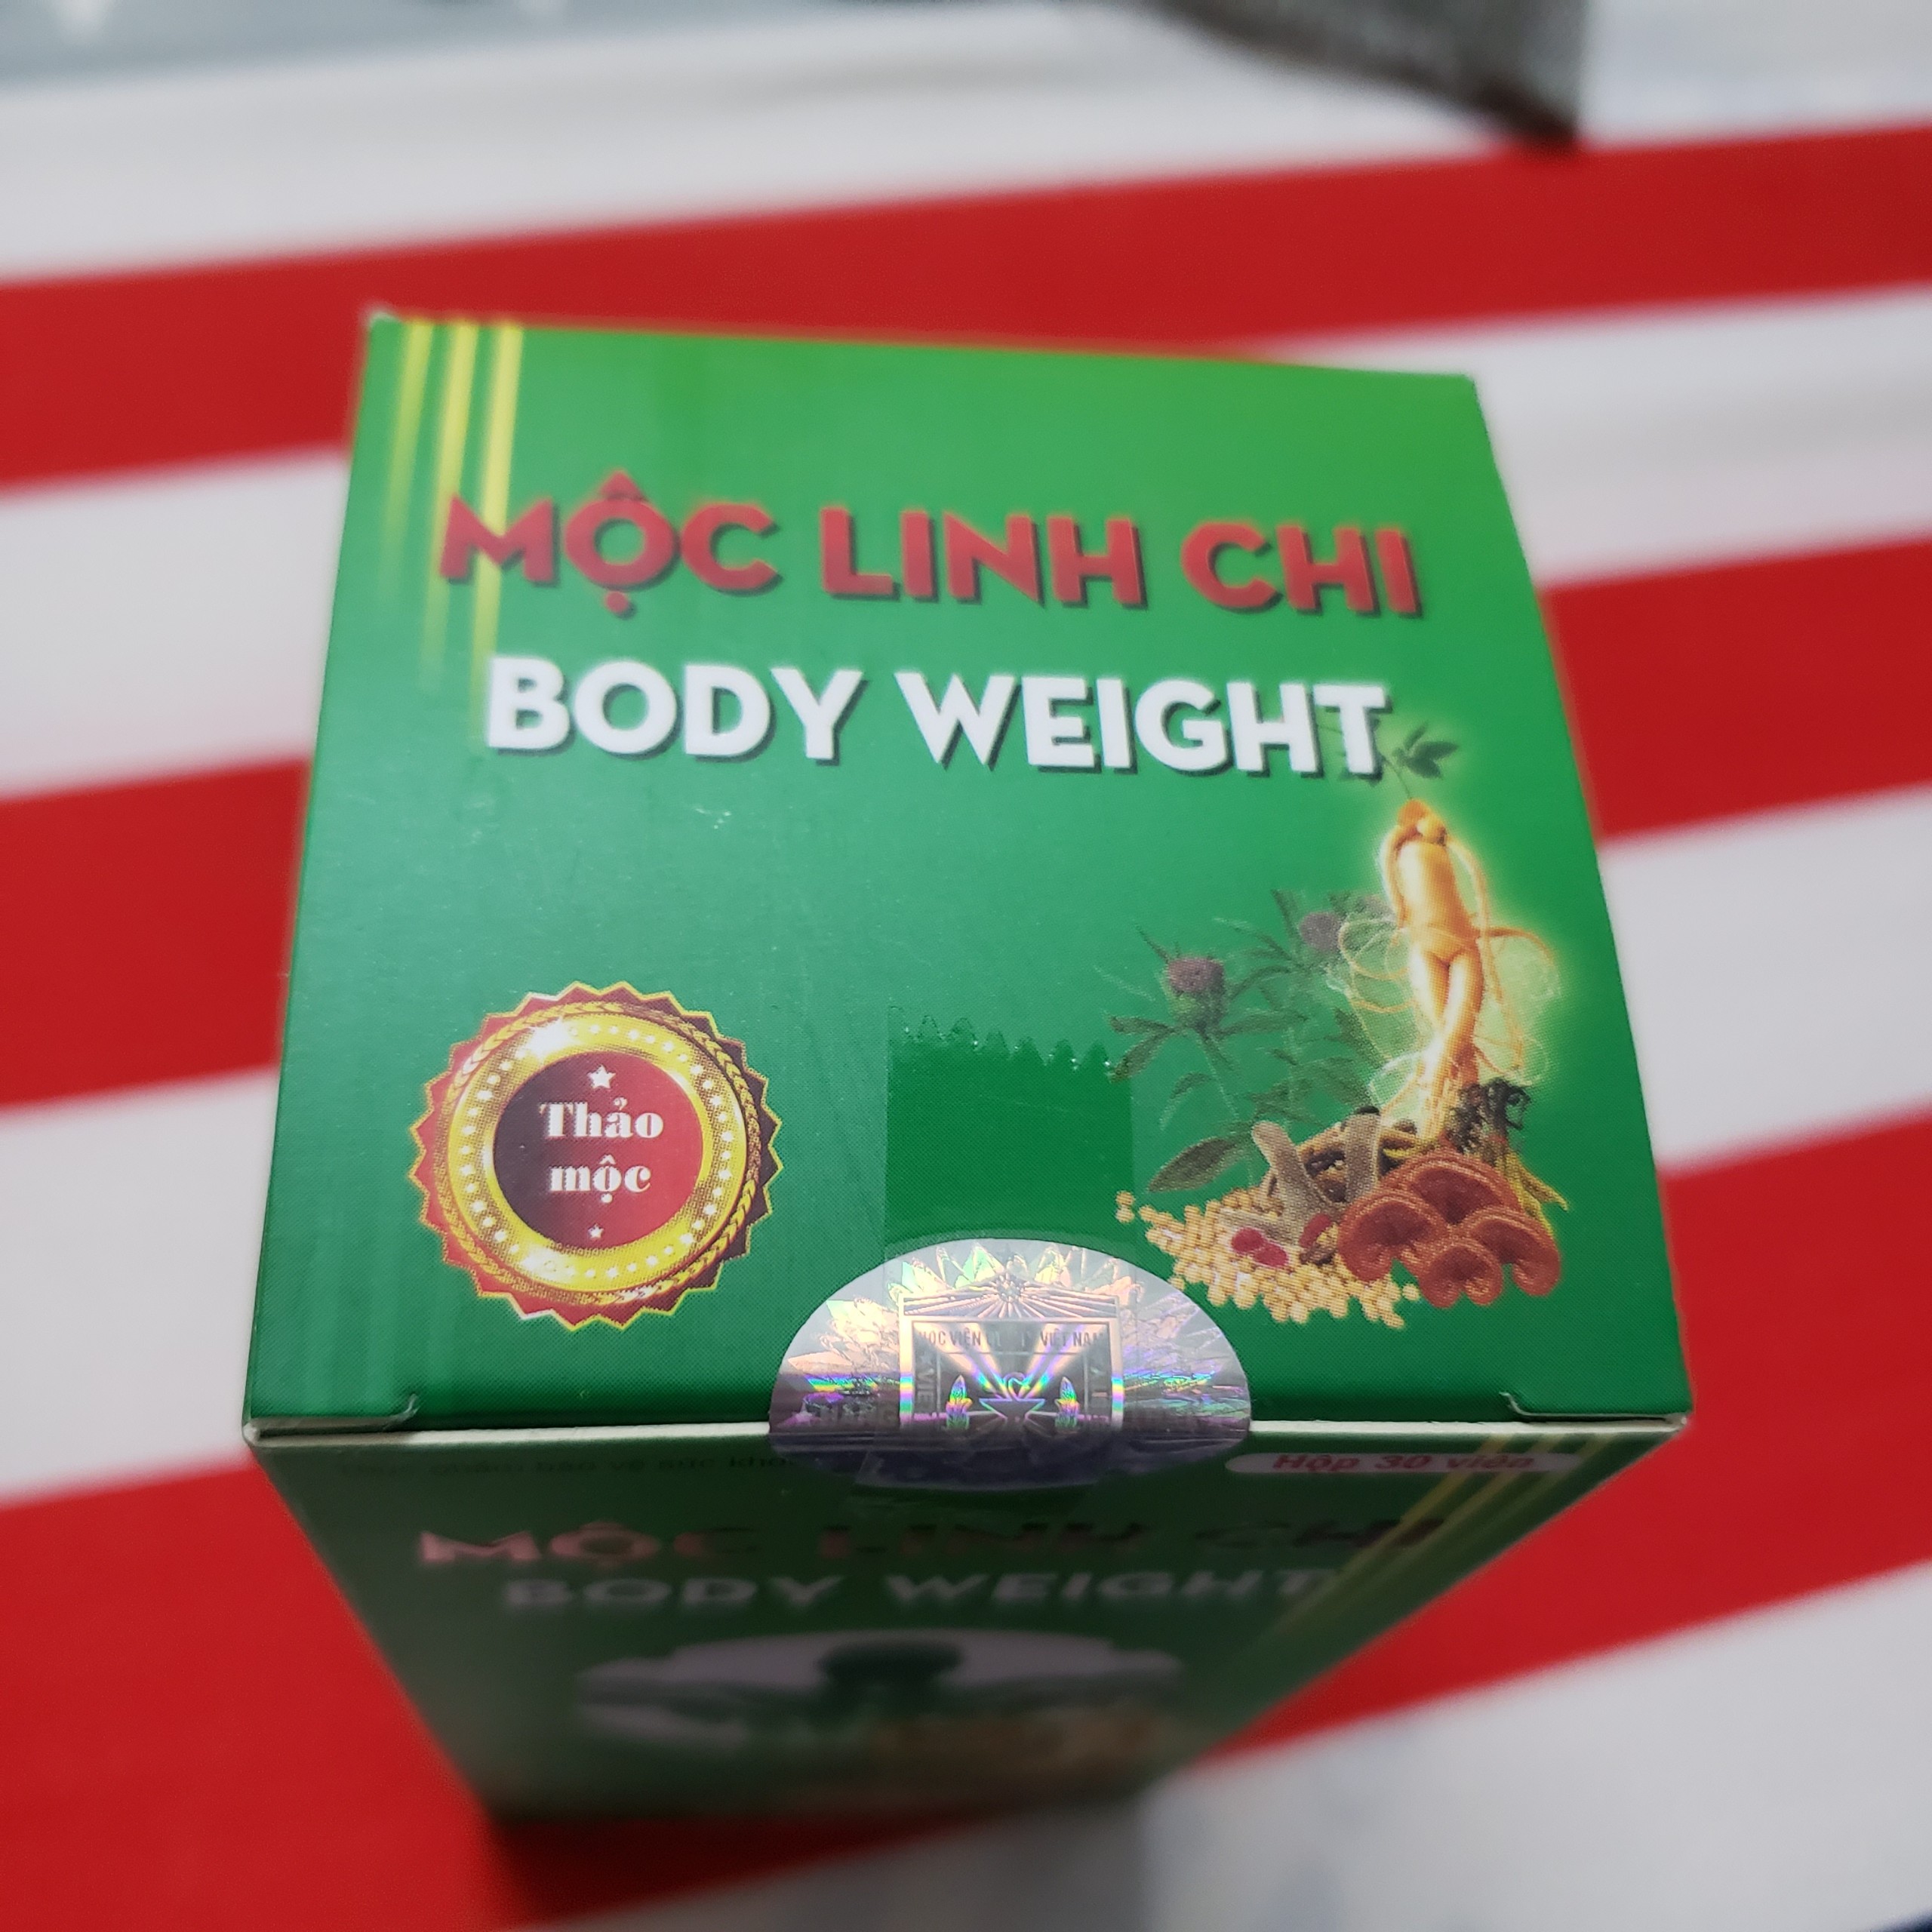 Viên uống Mộc Linh Chi - Body Weight Học Viện Quân Y 30 viên hỗ trợ bồi bổ cơ thể phát triển khối cơ